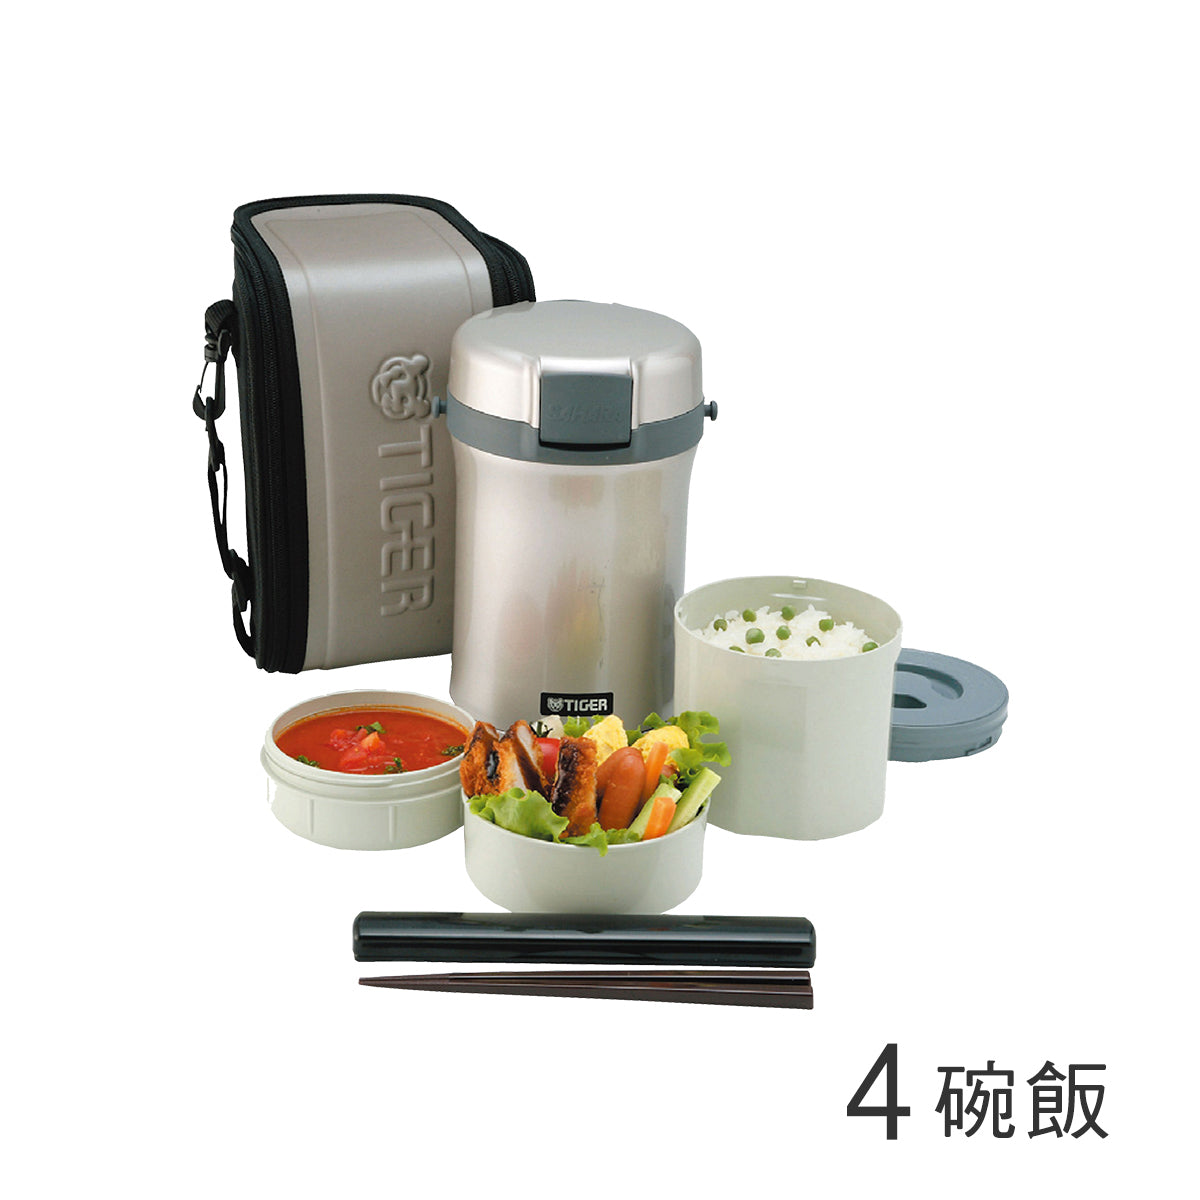 不鏽鋼保溫飯盒_4碗飯 (LWU-B200)